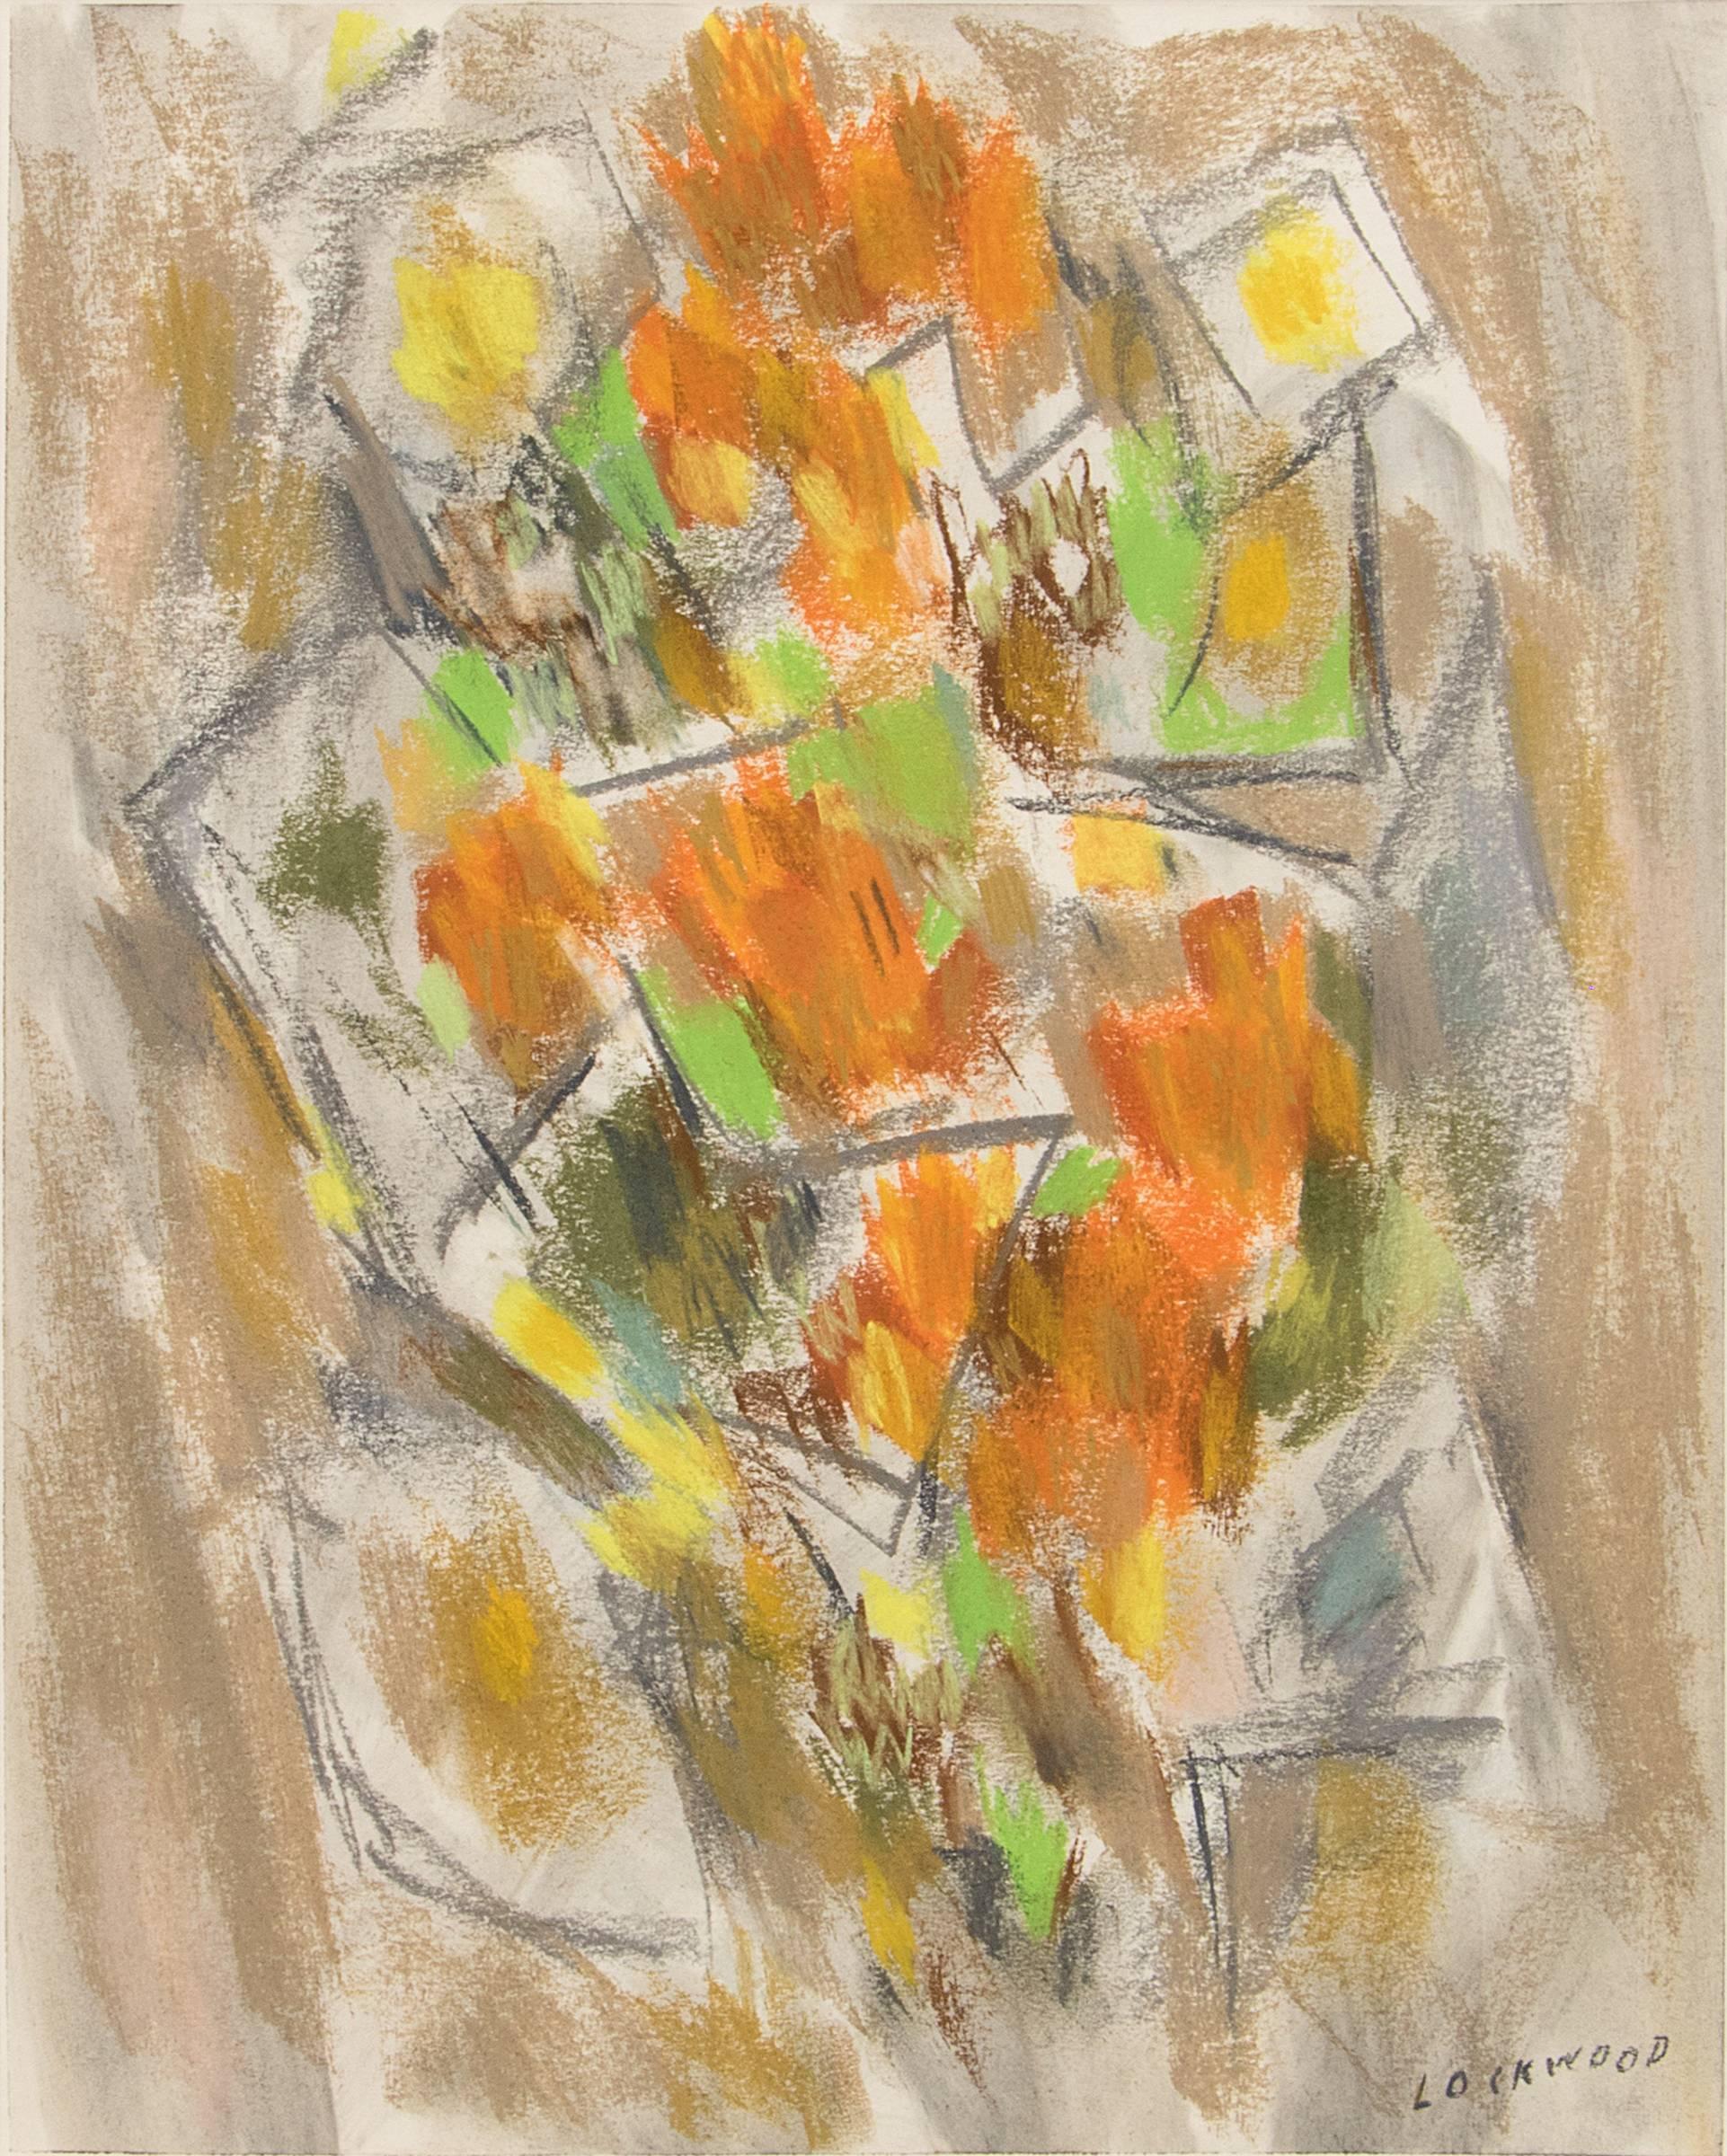 Abstrakte geblümte Stilllebenzeichnung, Mid-Century Modern, Pastellzeichnung, 1950er Jahre – Painting von John Ward Lockwood